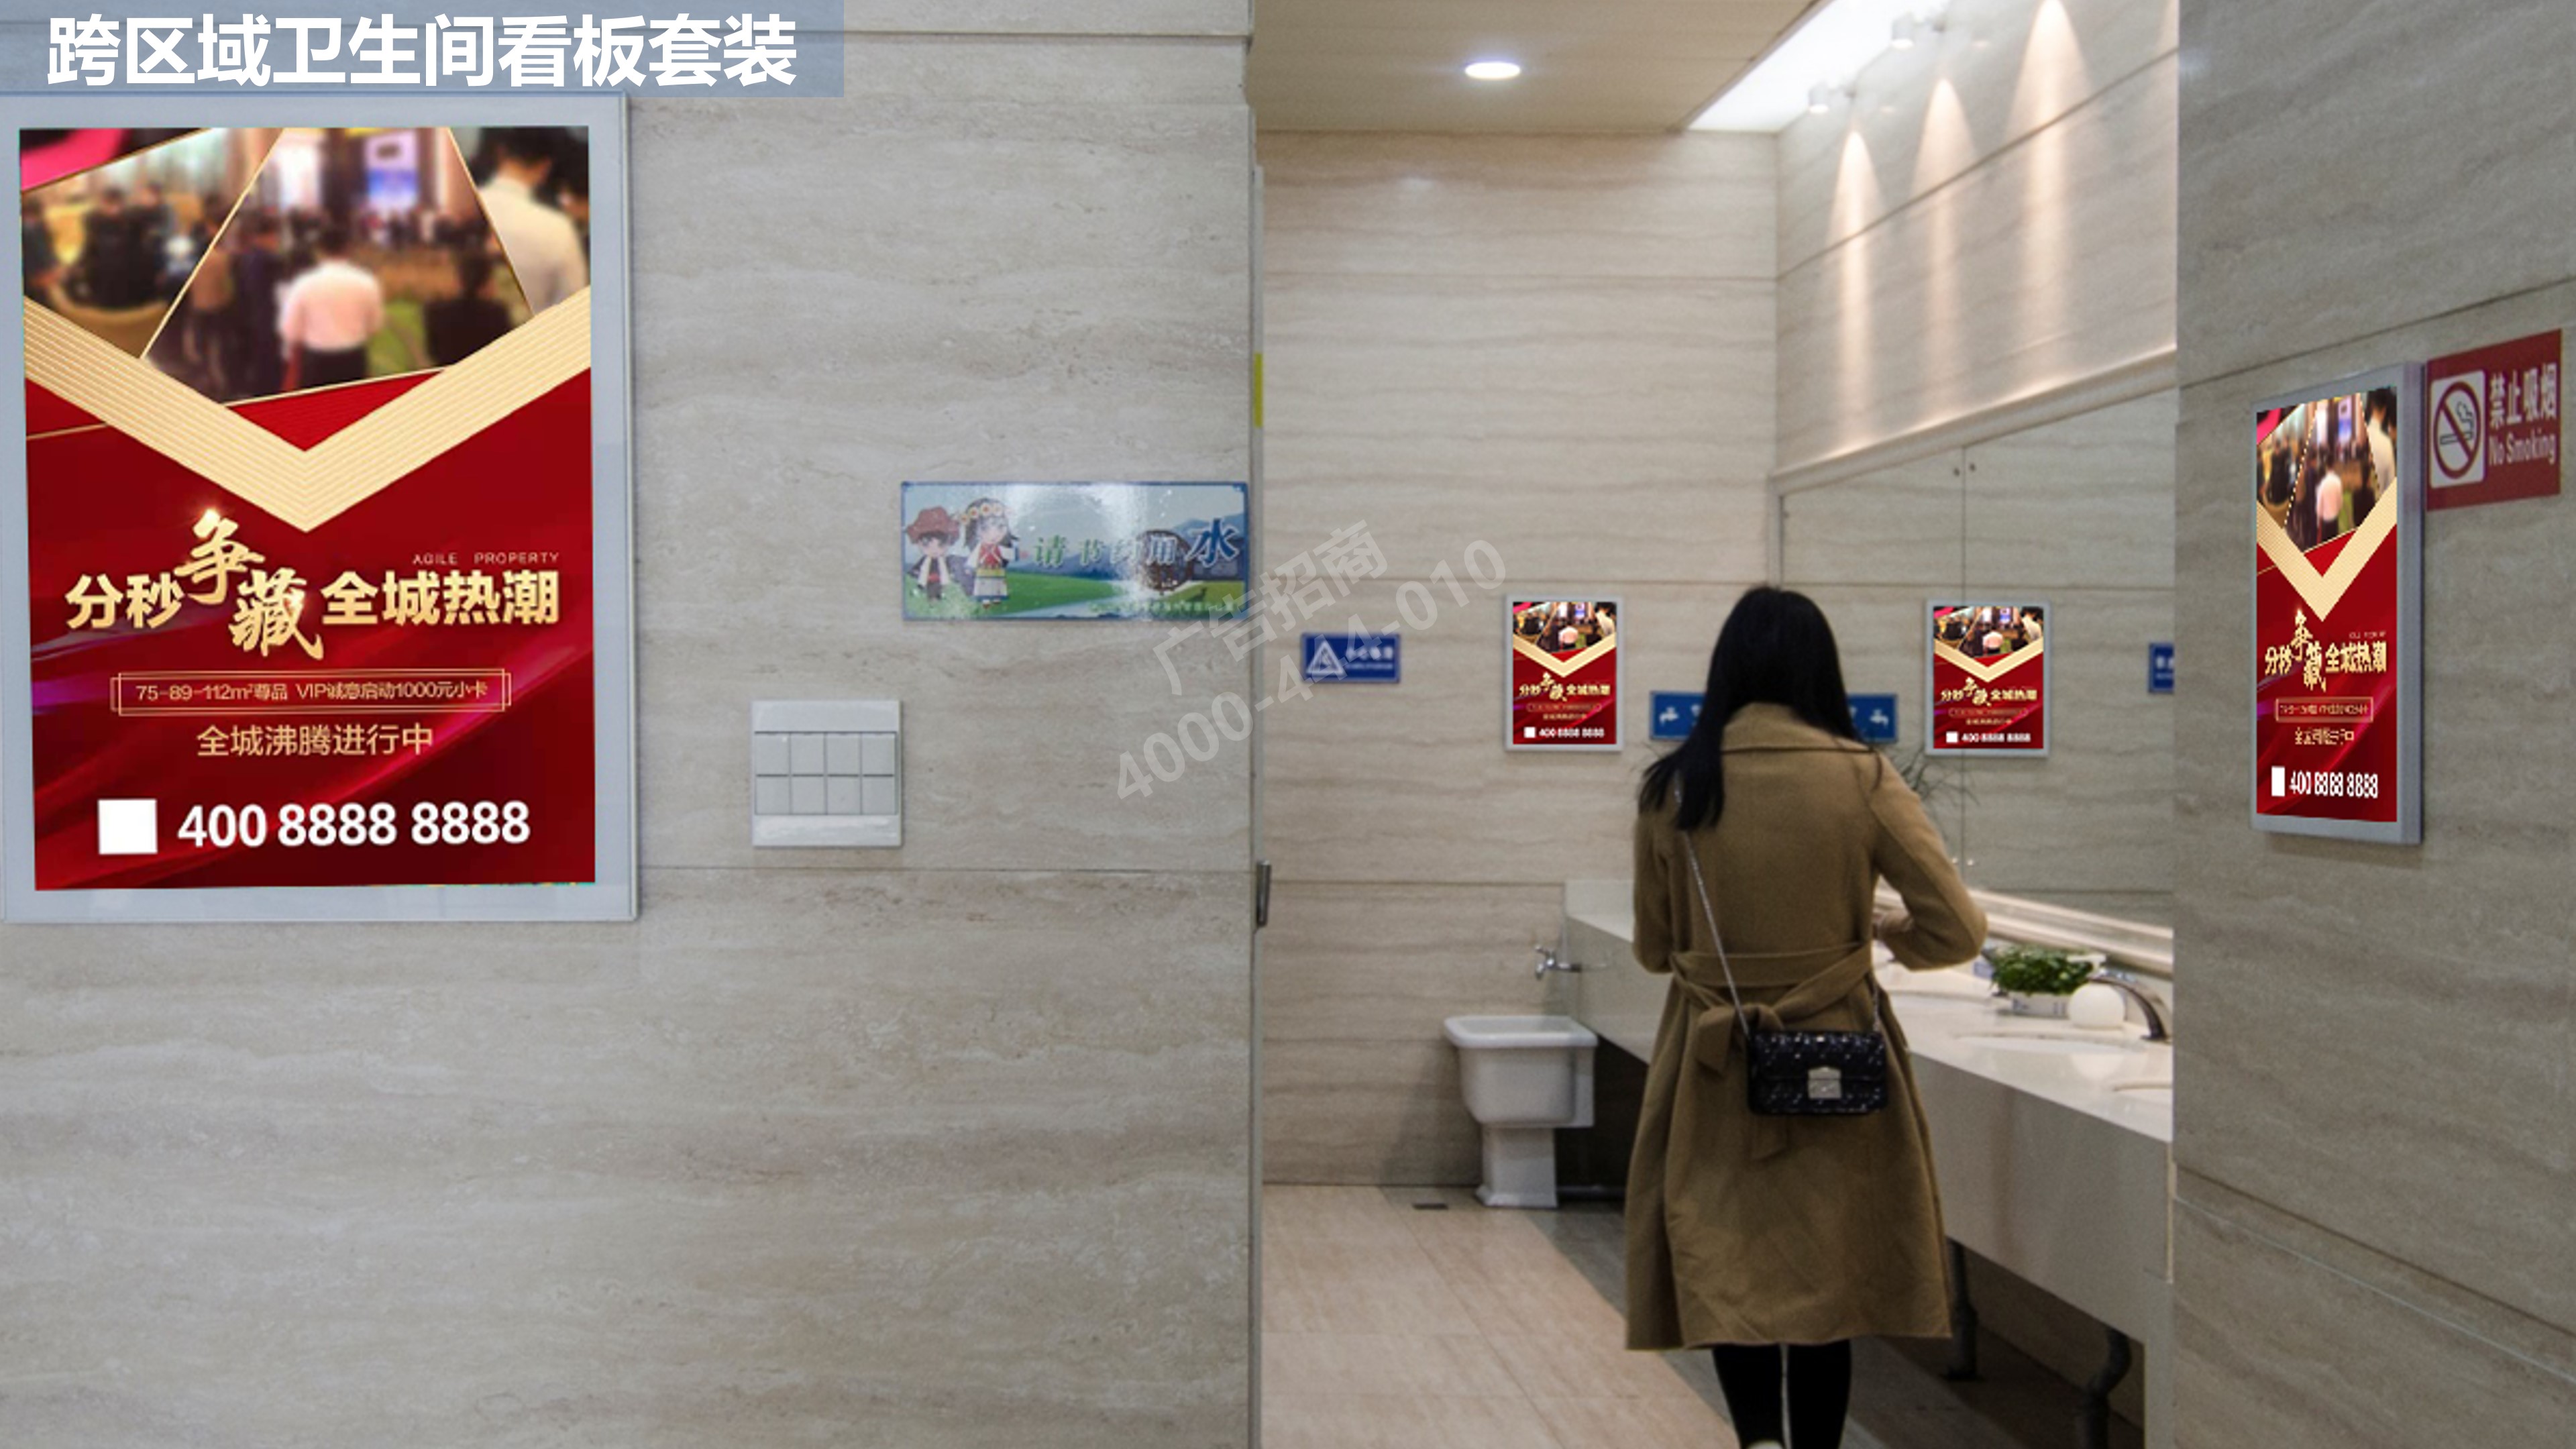 丽江机场跨区域卫生间广告